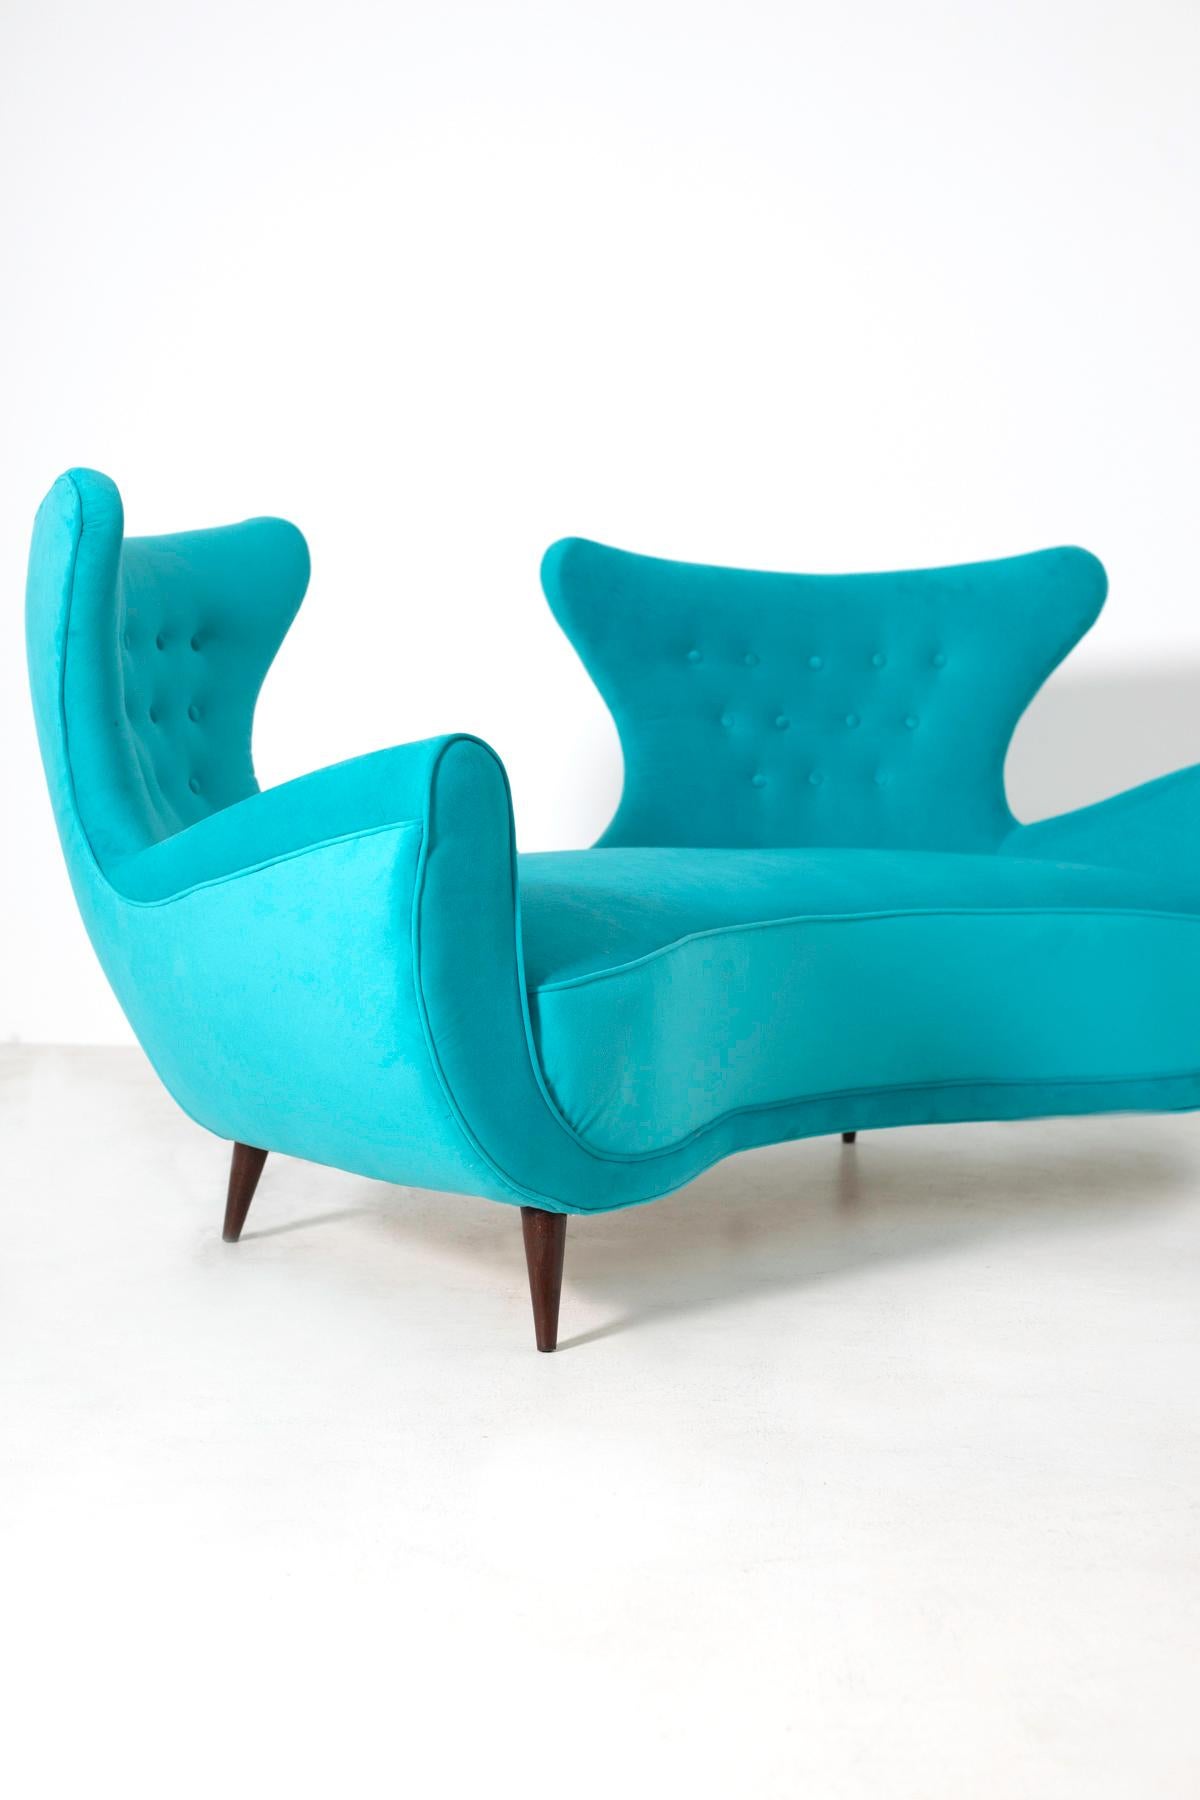 Italian Midcentury Loveseats Sofa in Blue Velvet Restored, 1950s 2